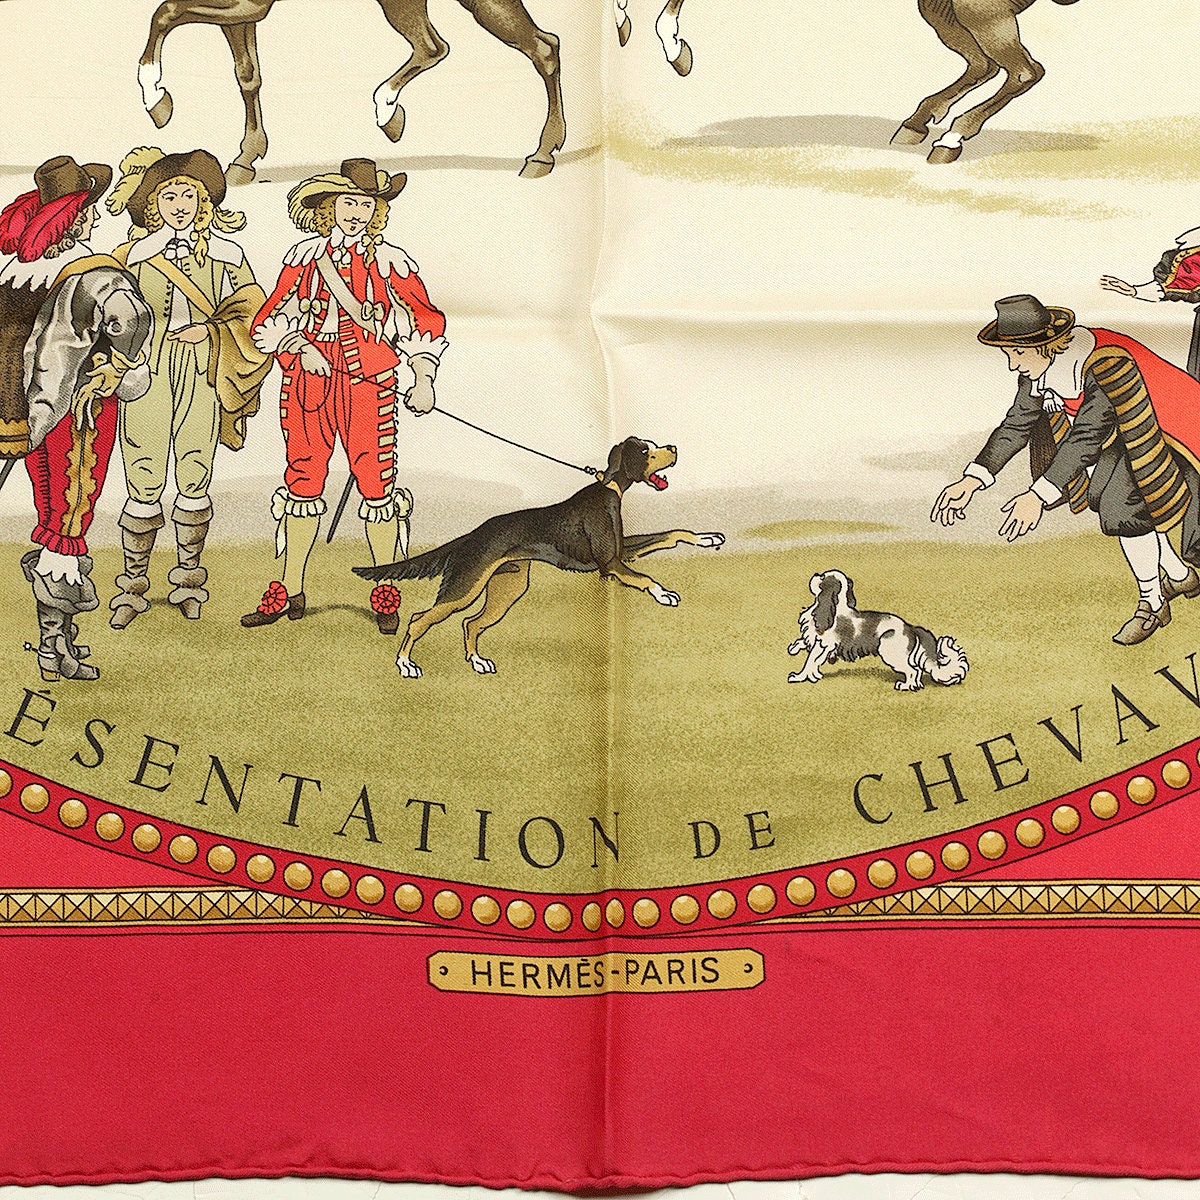 Hermes Scarf "La Presentation de Chevaux" by Philippe Ledoux 90cm Silk | Carre Foulard